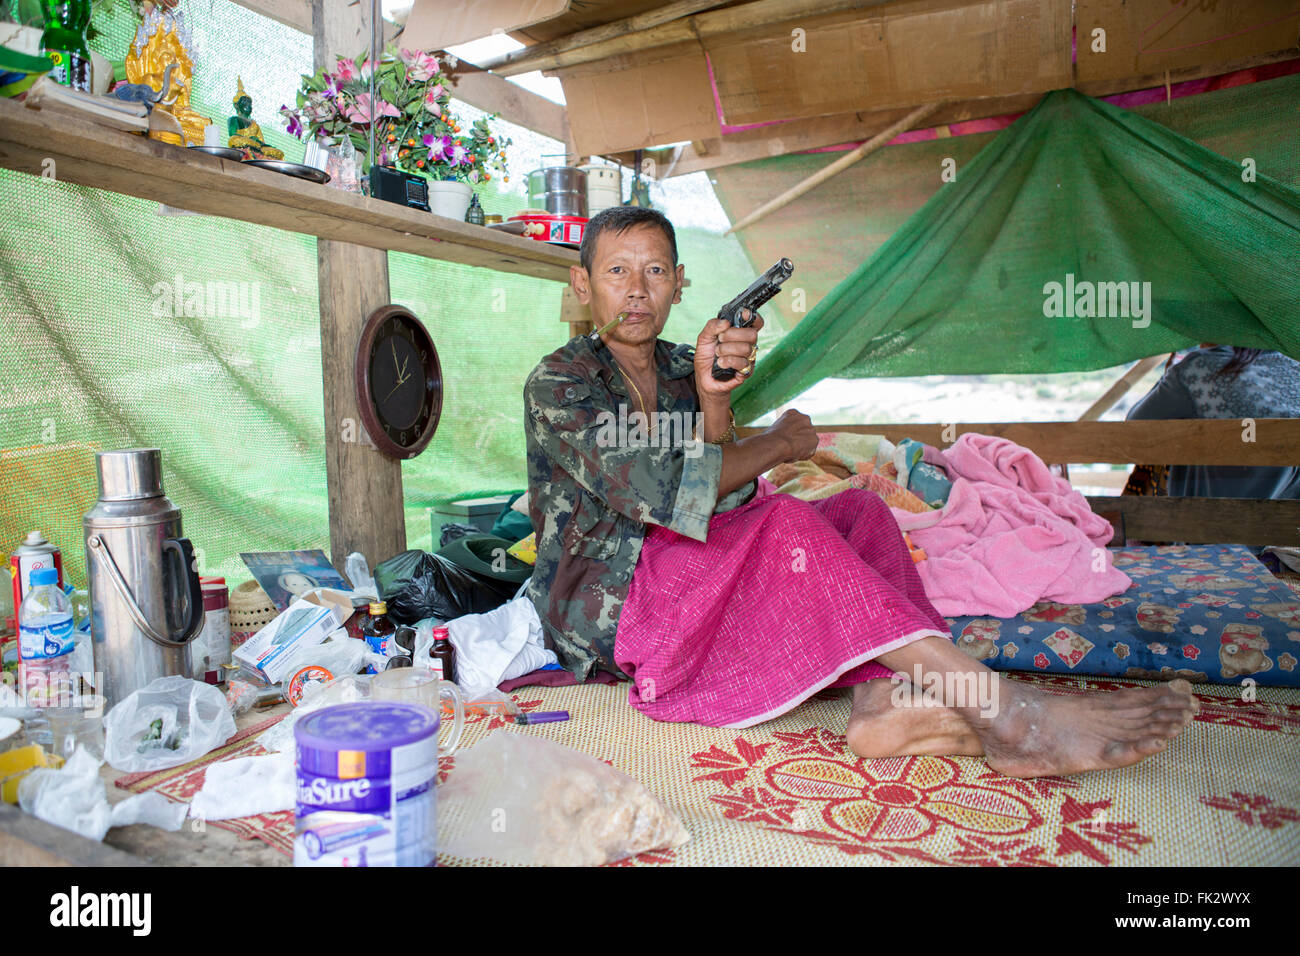 Chasseur de Kayin indigène de l'Armée de libération nationale Karen (KNLA), aile armée de KNU (Union nationale Karen) avec pistolet, Tanintharyi, Myanmar Banque D'Images